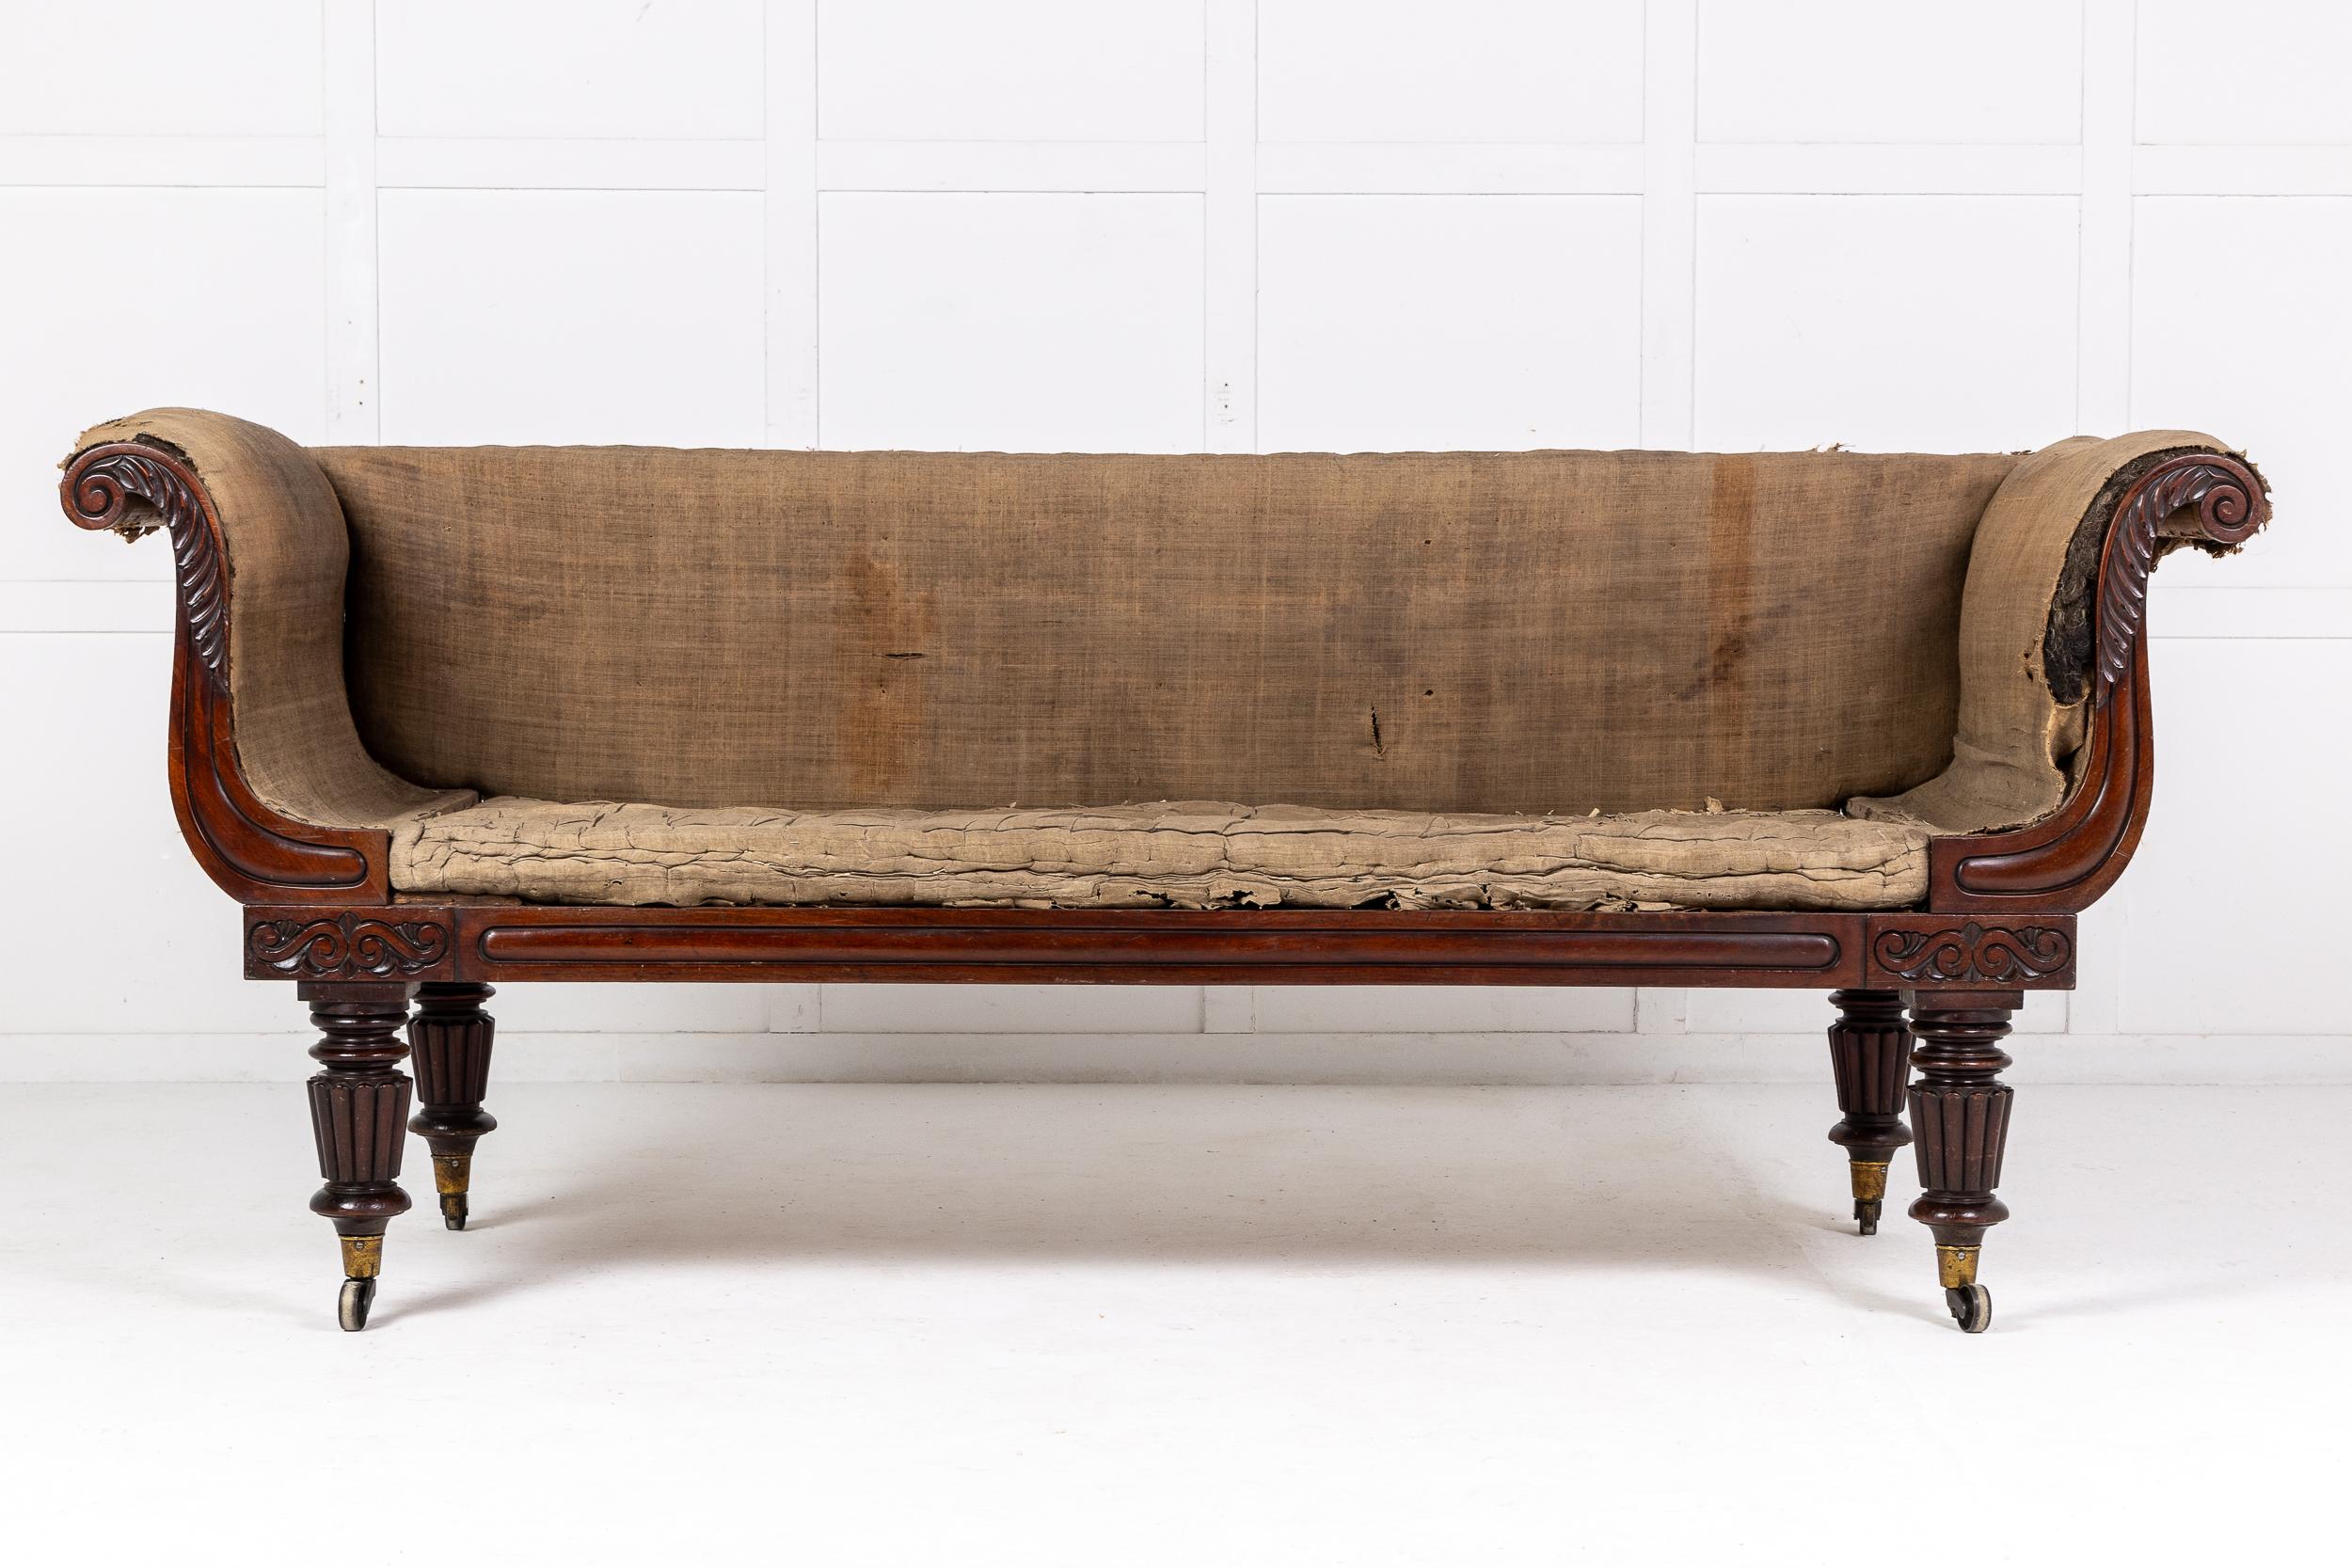 Très beau canapé en acajou de la fin de la période Régence à la manière de Gillows. Circa 1830.

De forme allongée en forme de fauteuil, cette pièce a été construite en acajou de la plus haute qualité qui a pris une belle couleur après des années